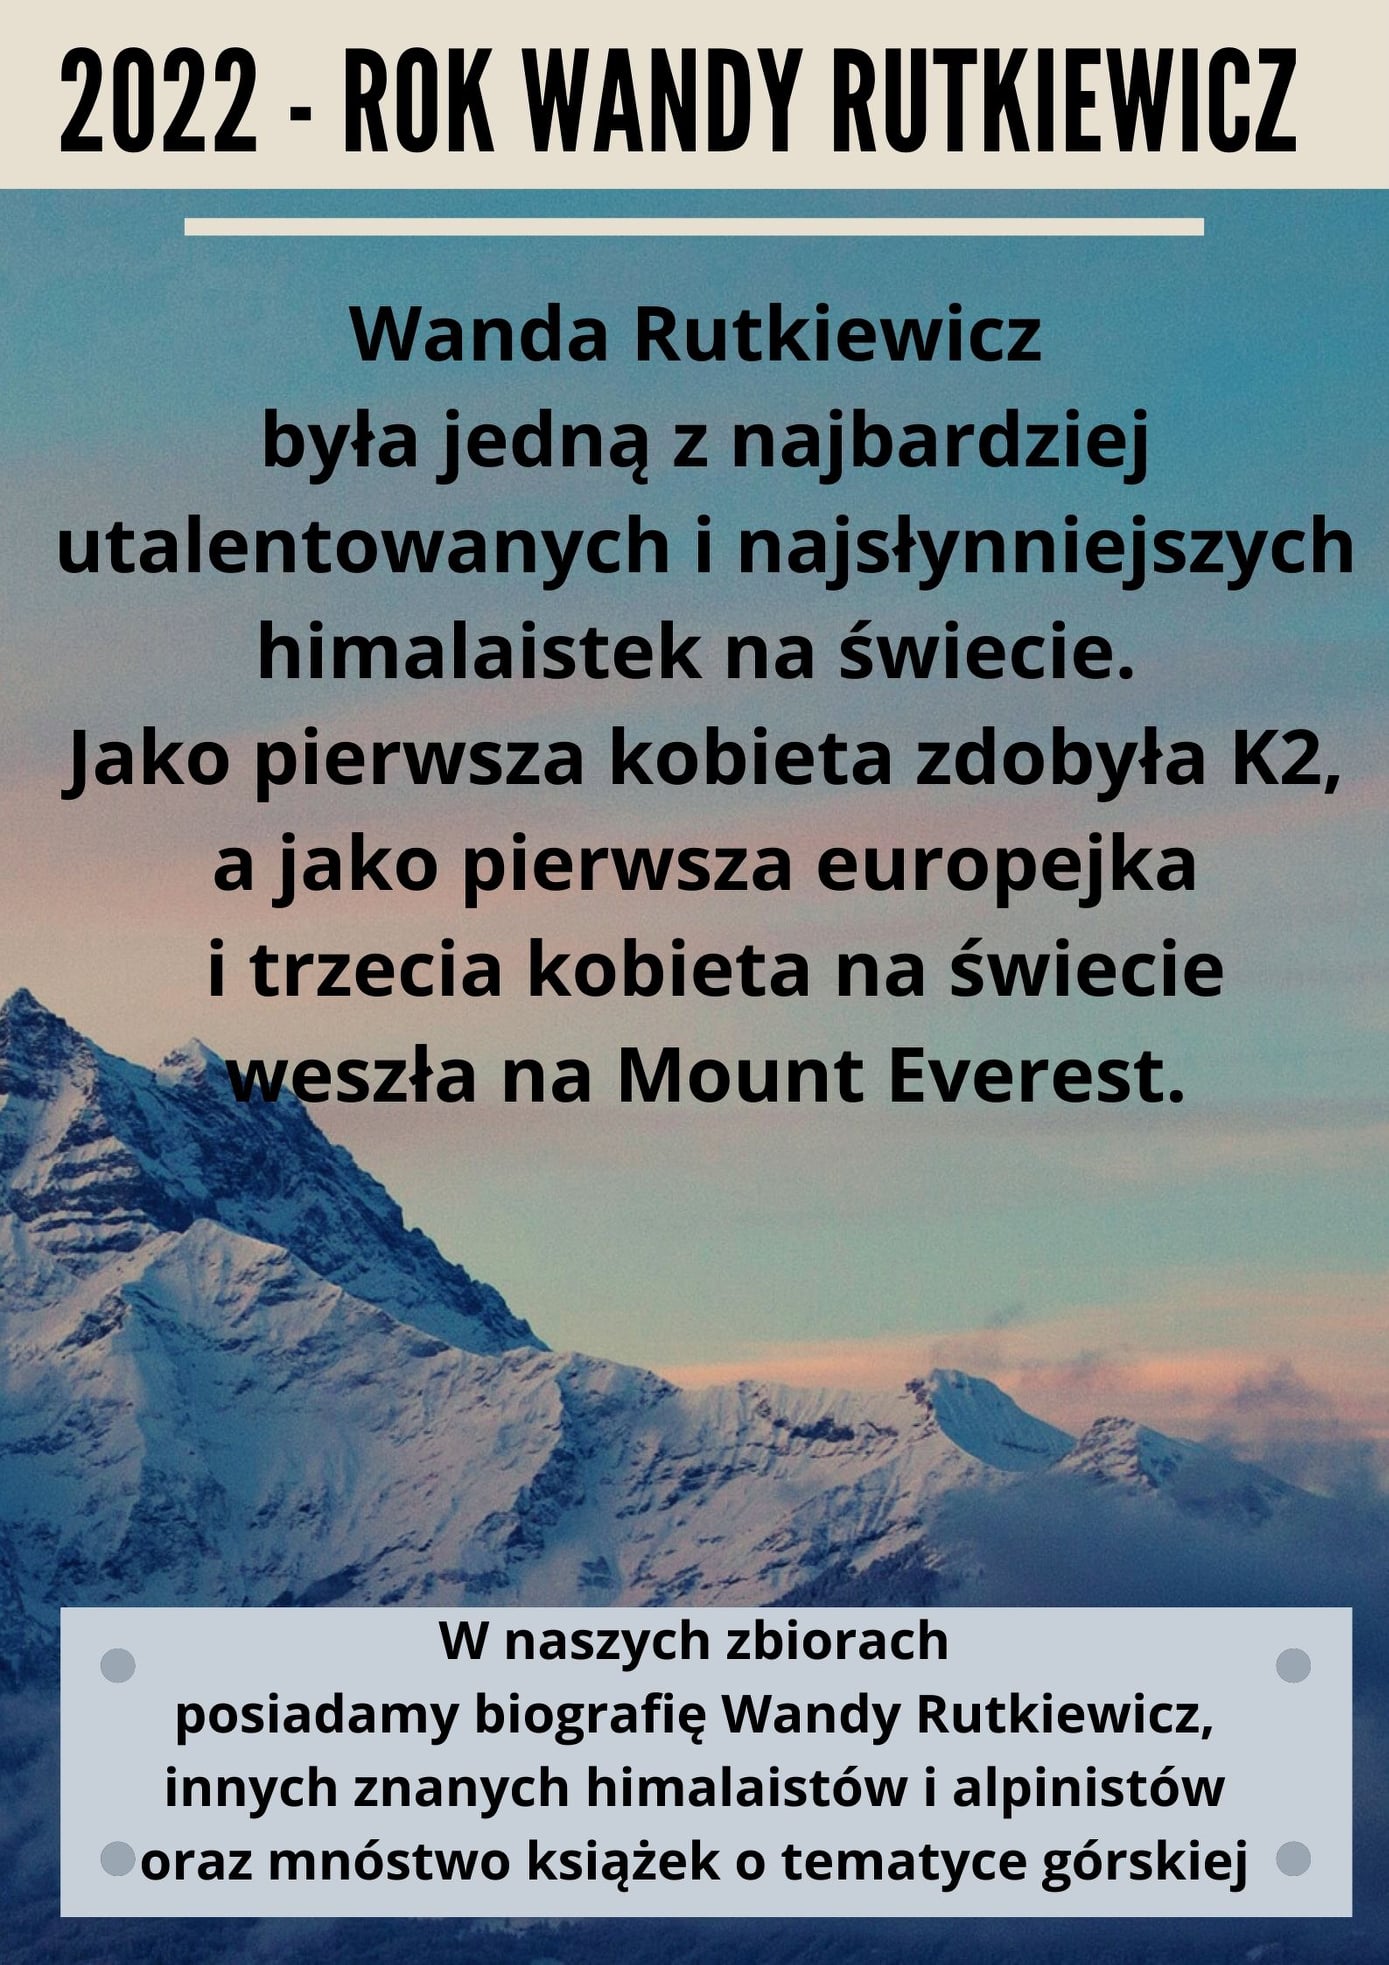 Plakat z podstawowymi informacjami o Wandzie Rutkiewicz na tale gór